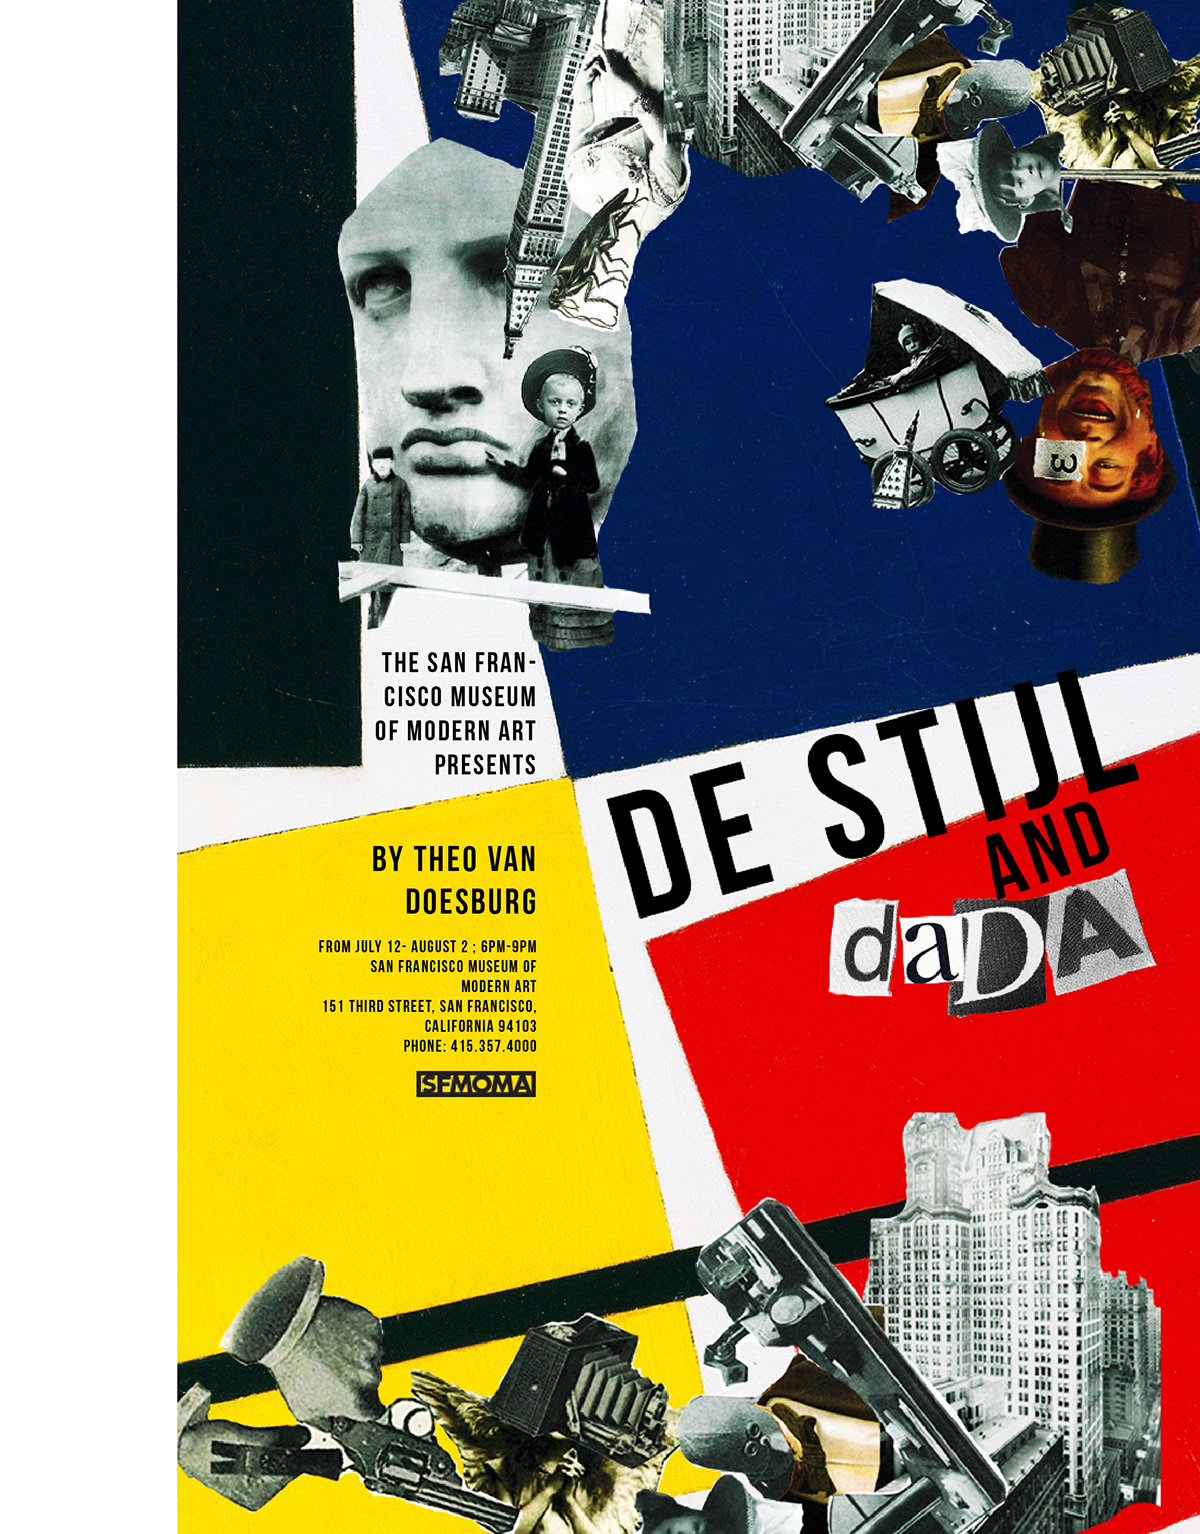 de stijl Dada modernism modern art Theo Van Doesburg poster constructivism